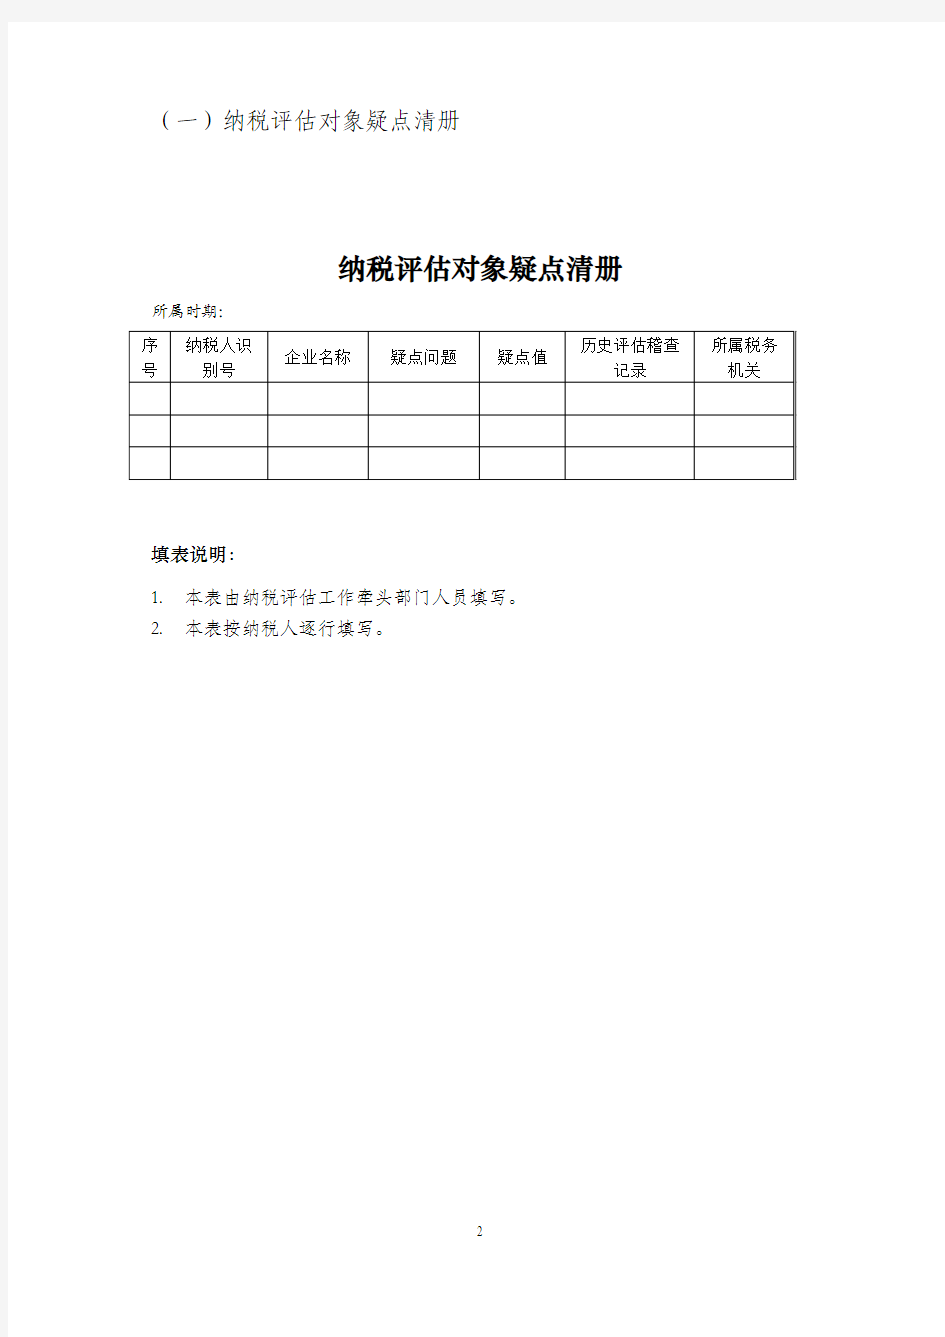 上海市纳税评估工作规程(试行)表证单书